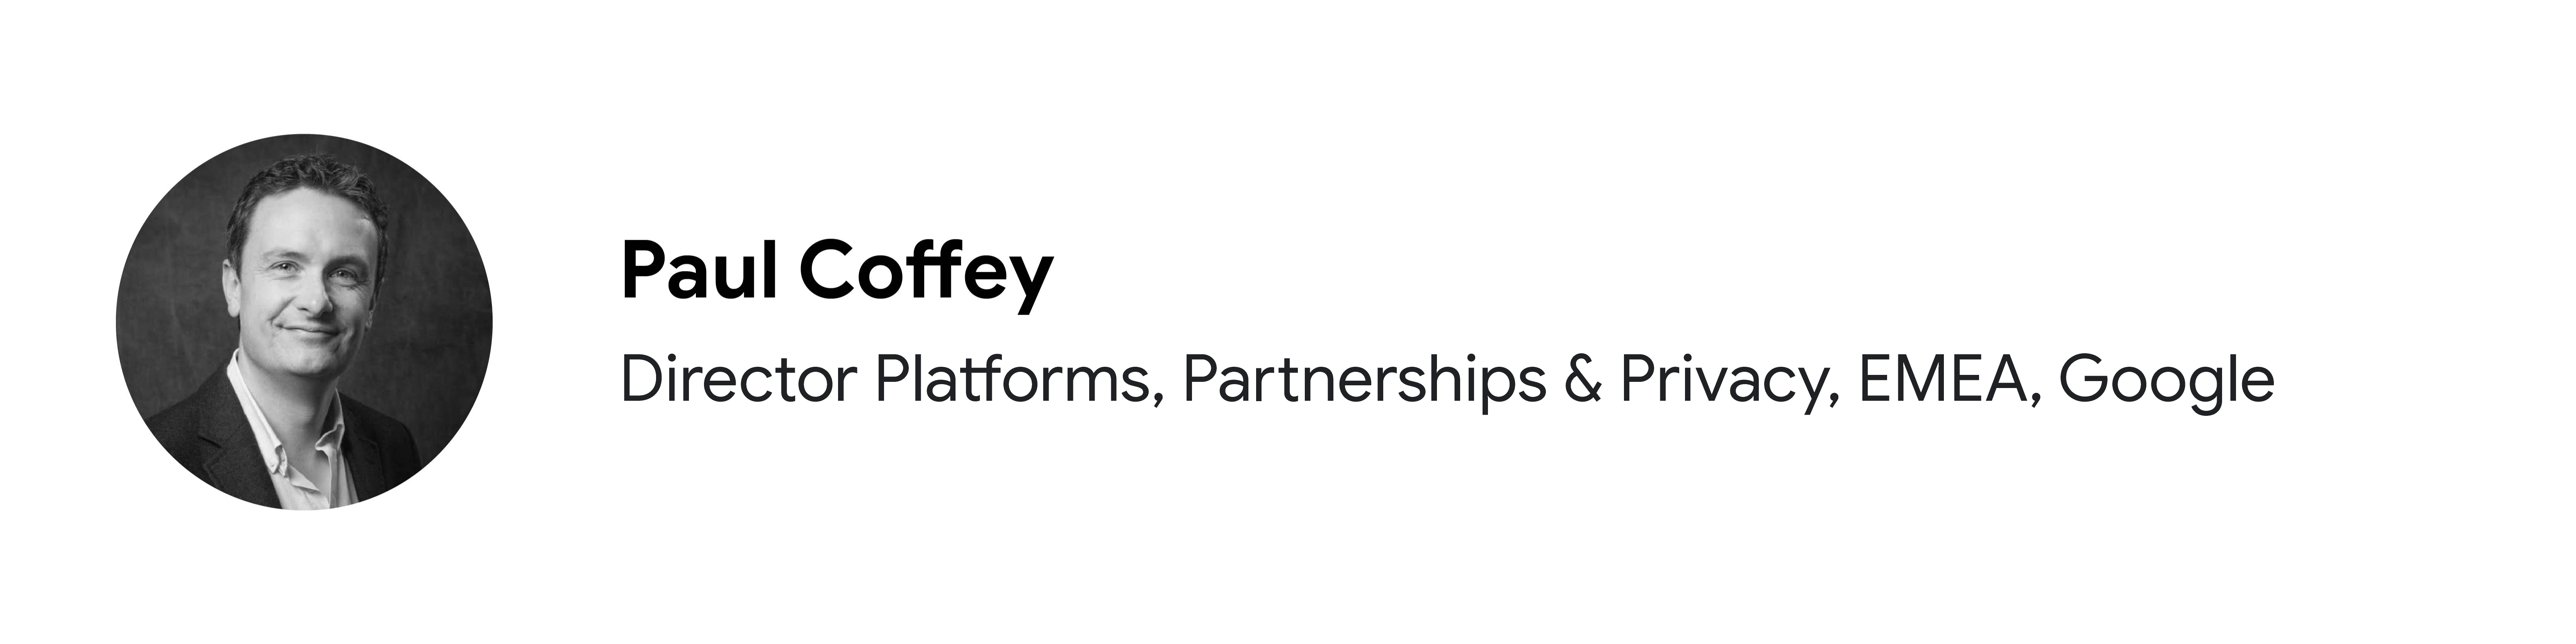 Google EMEA'da Director Platforms, Partnerships & Privacy olarak görev yapan katılımcı Paul Coffey'nin siyah beyaz portre fotoğrafı